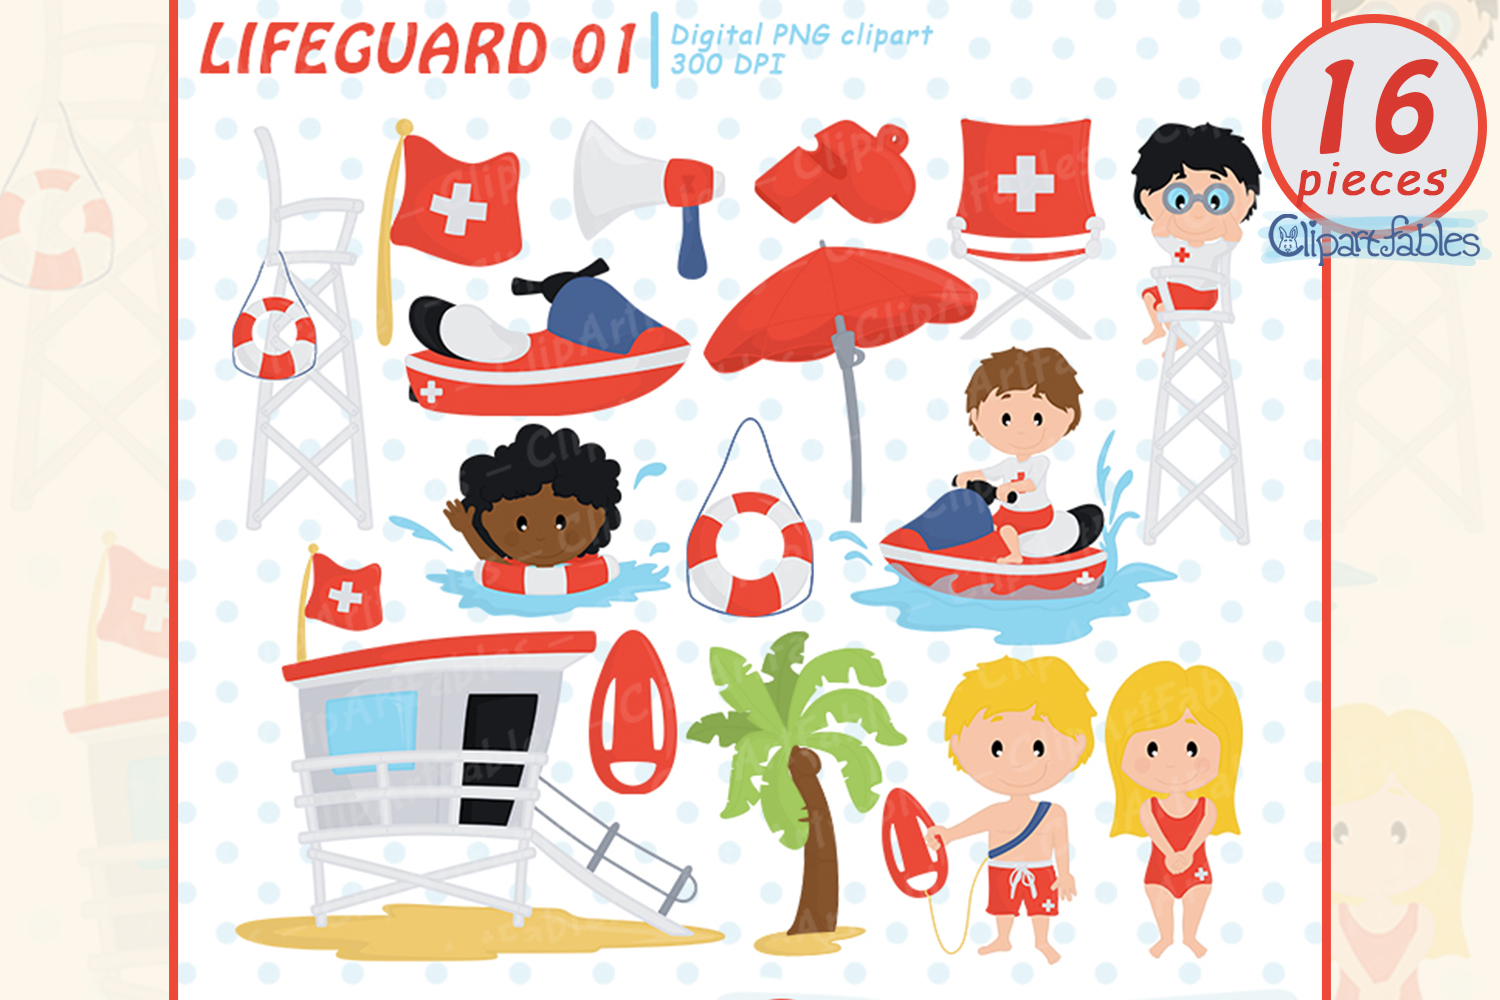 lifeguard clipart tool